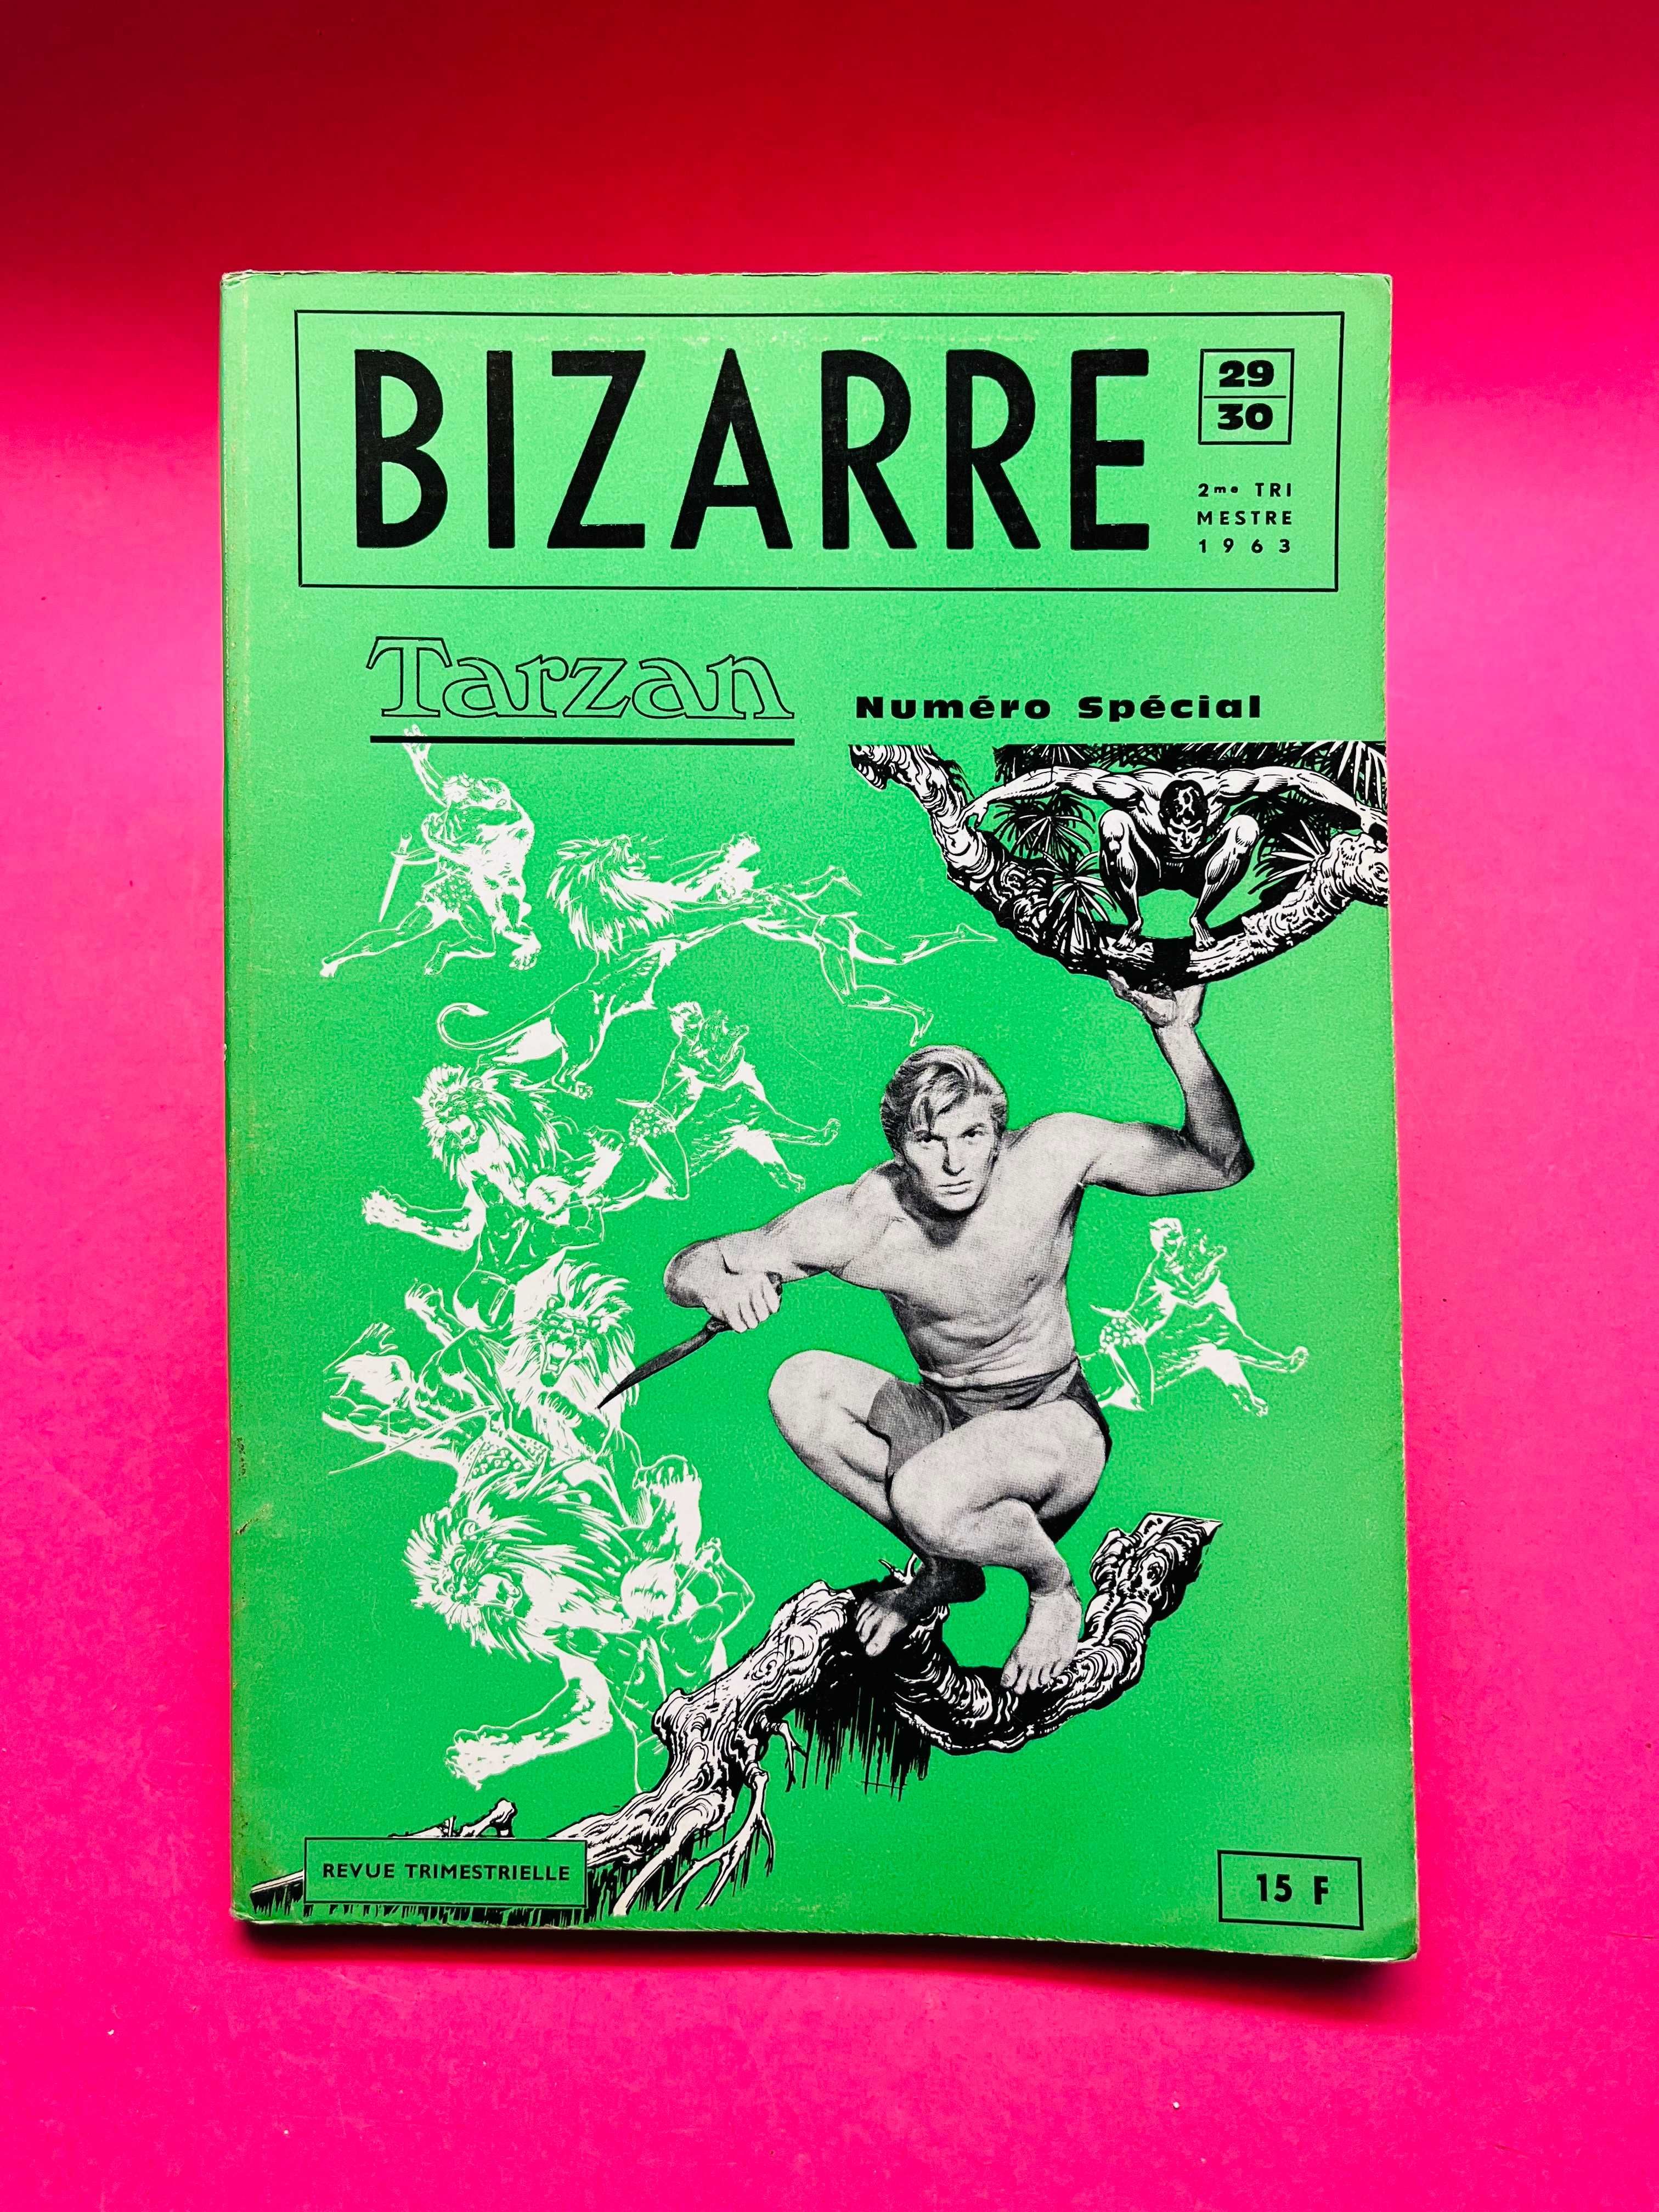 Bizarre - Tarzan Numéro Spécial